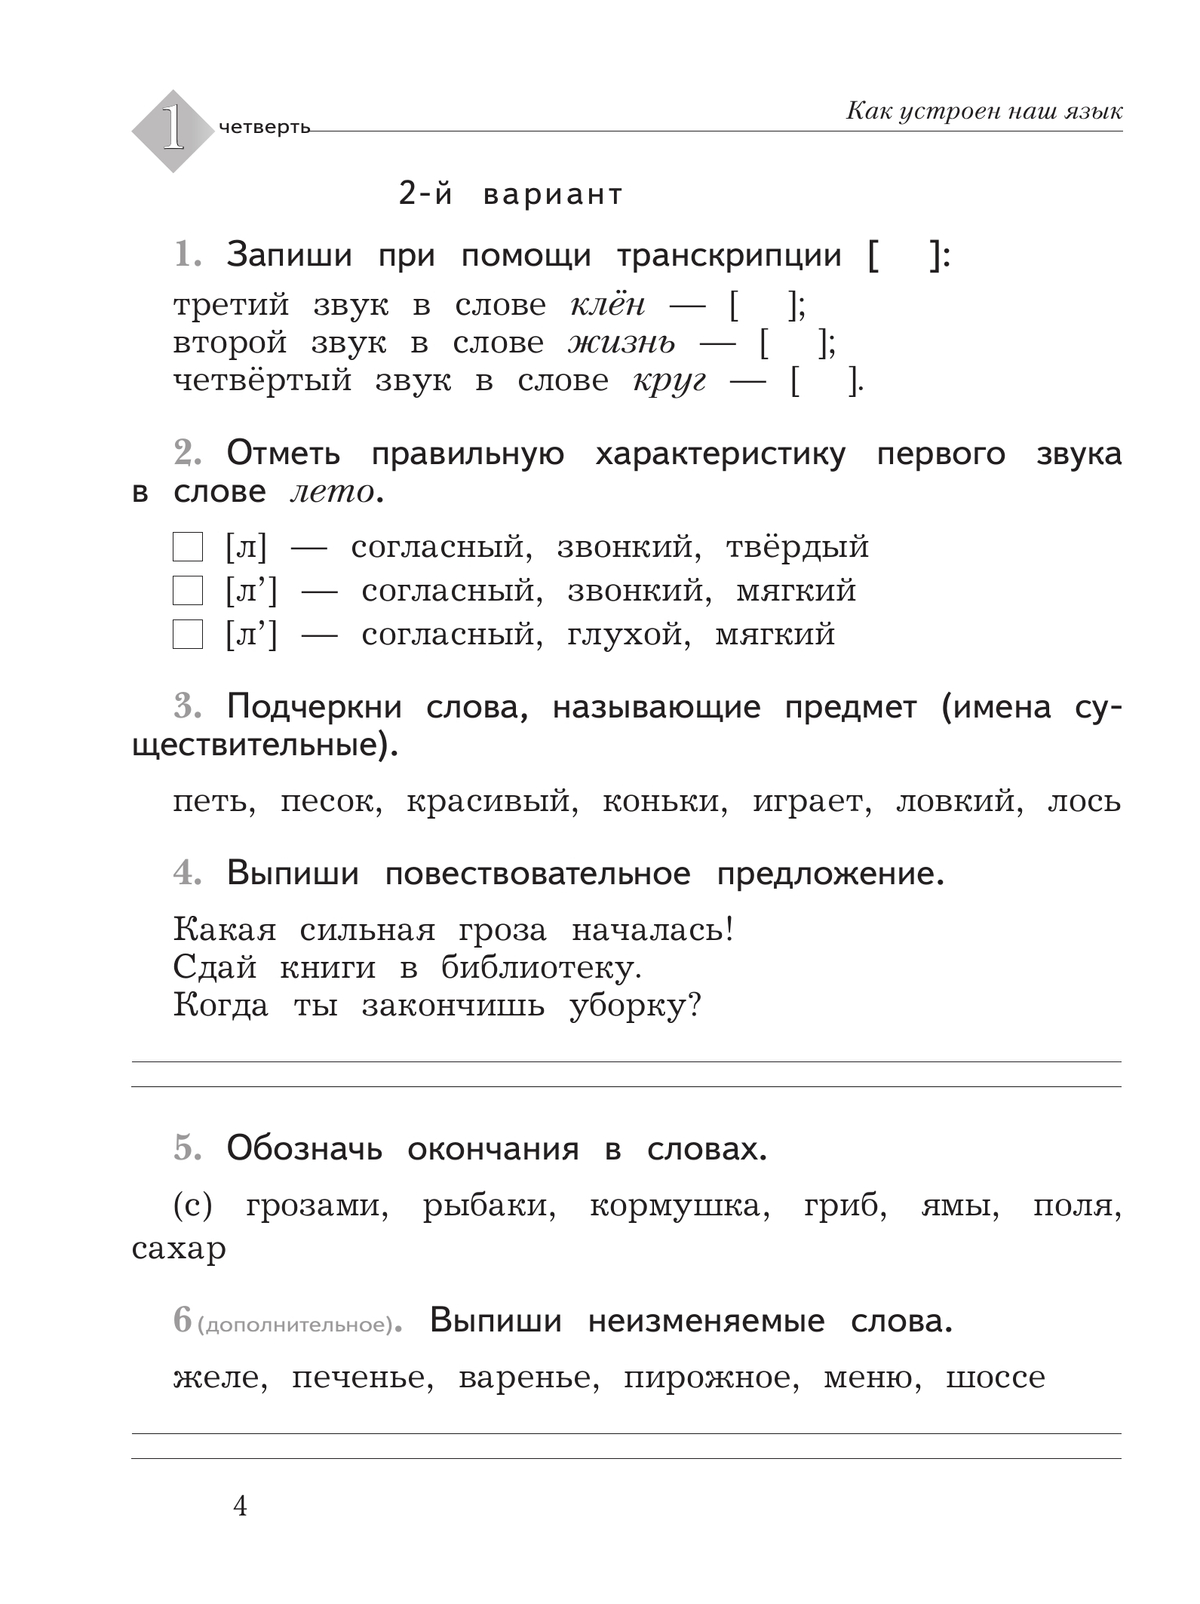 Русский язык. 2 класс. Тетрадь для контрольных работ 2